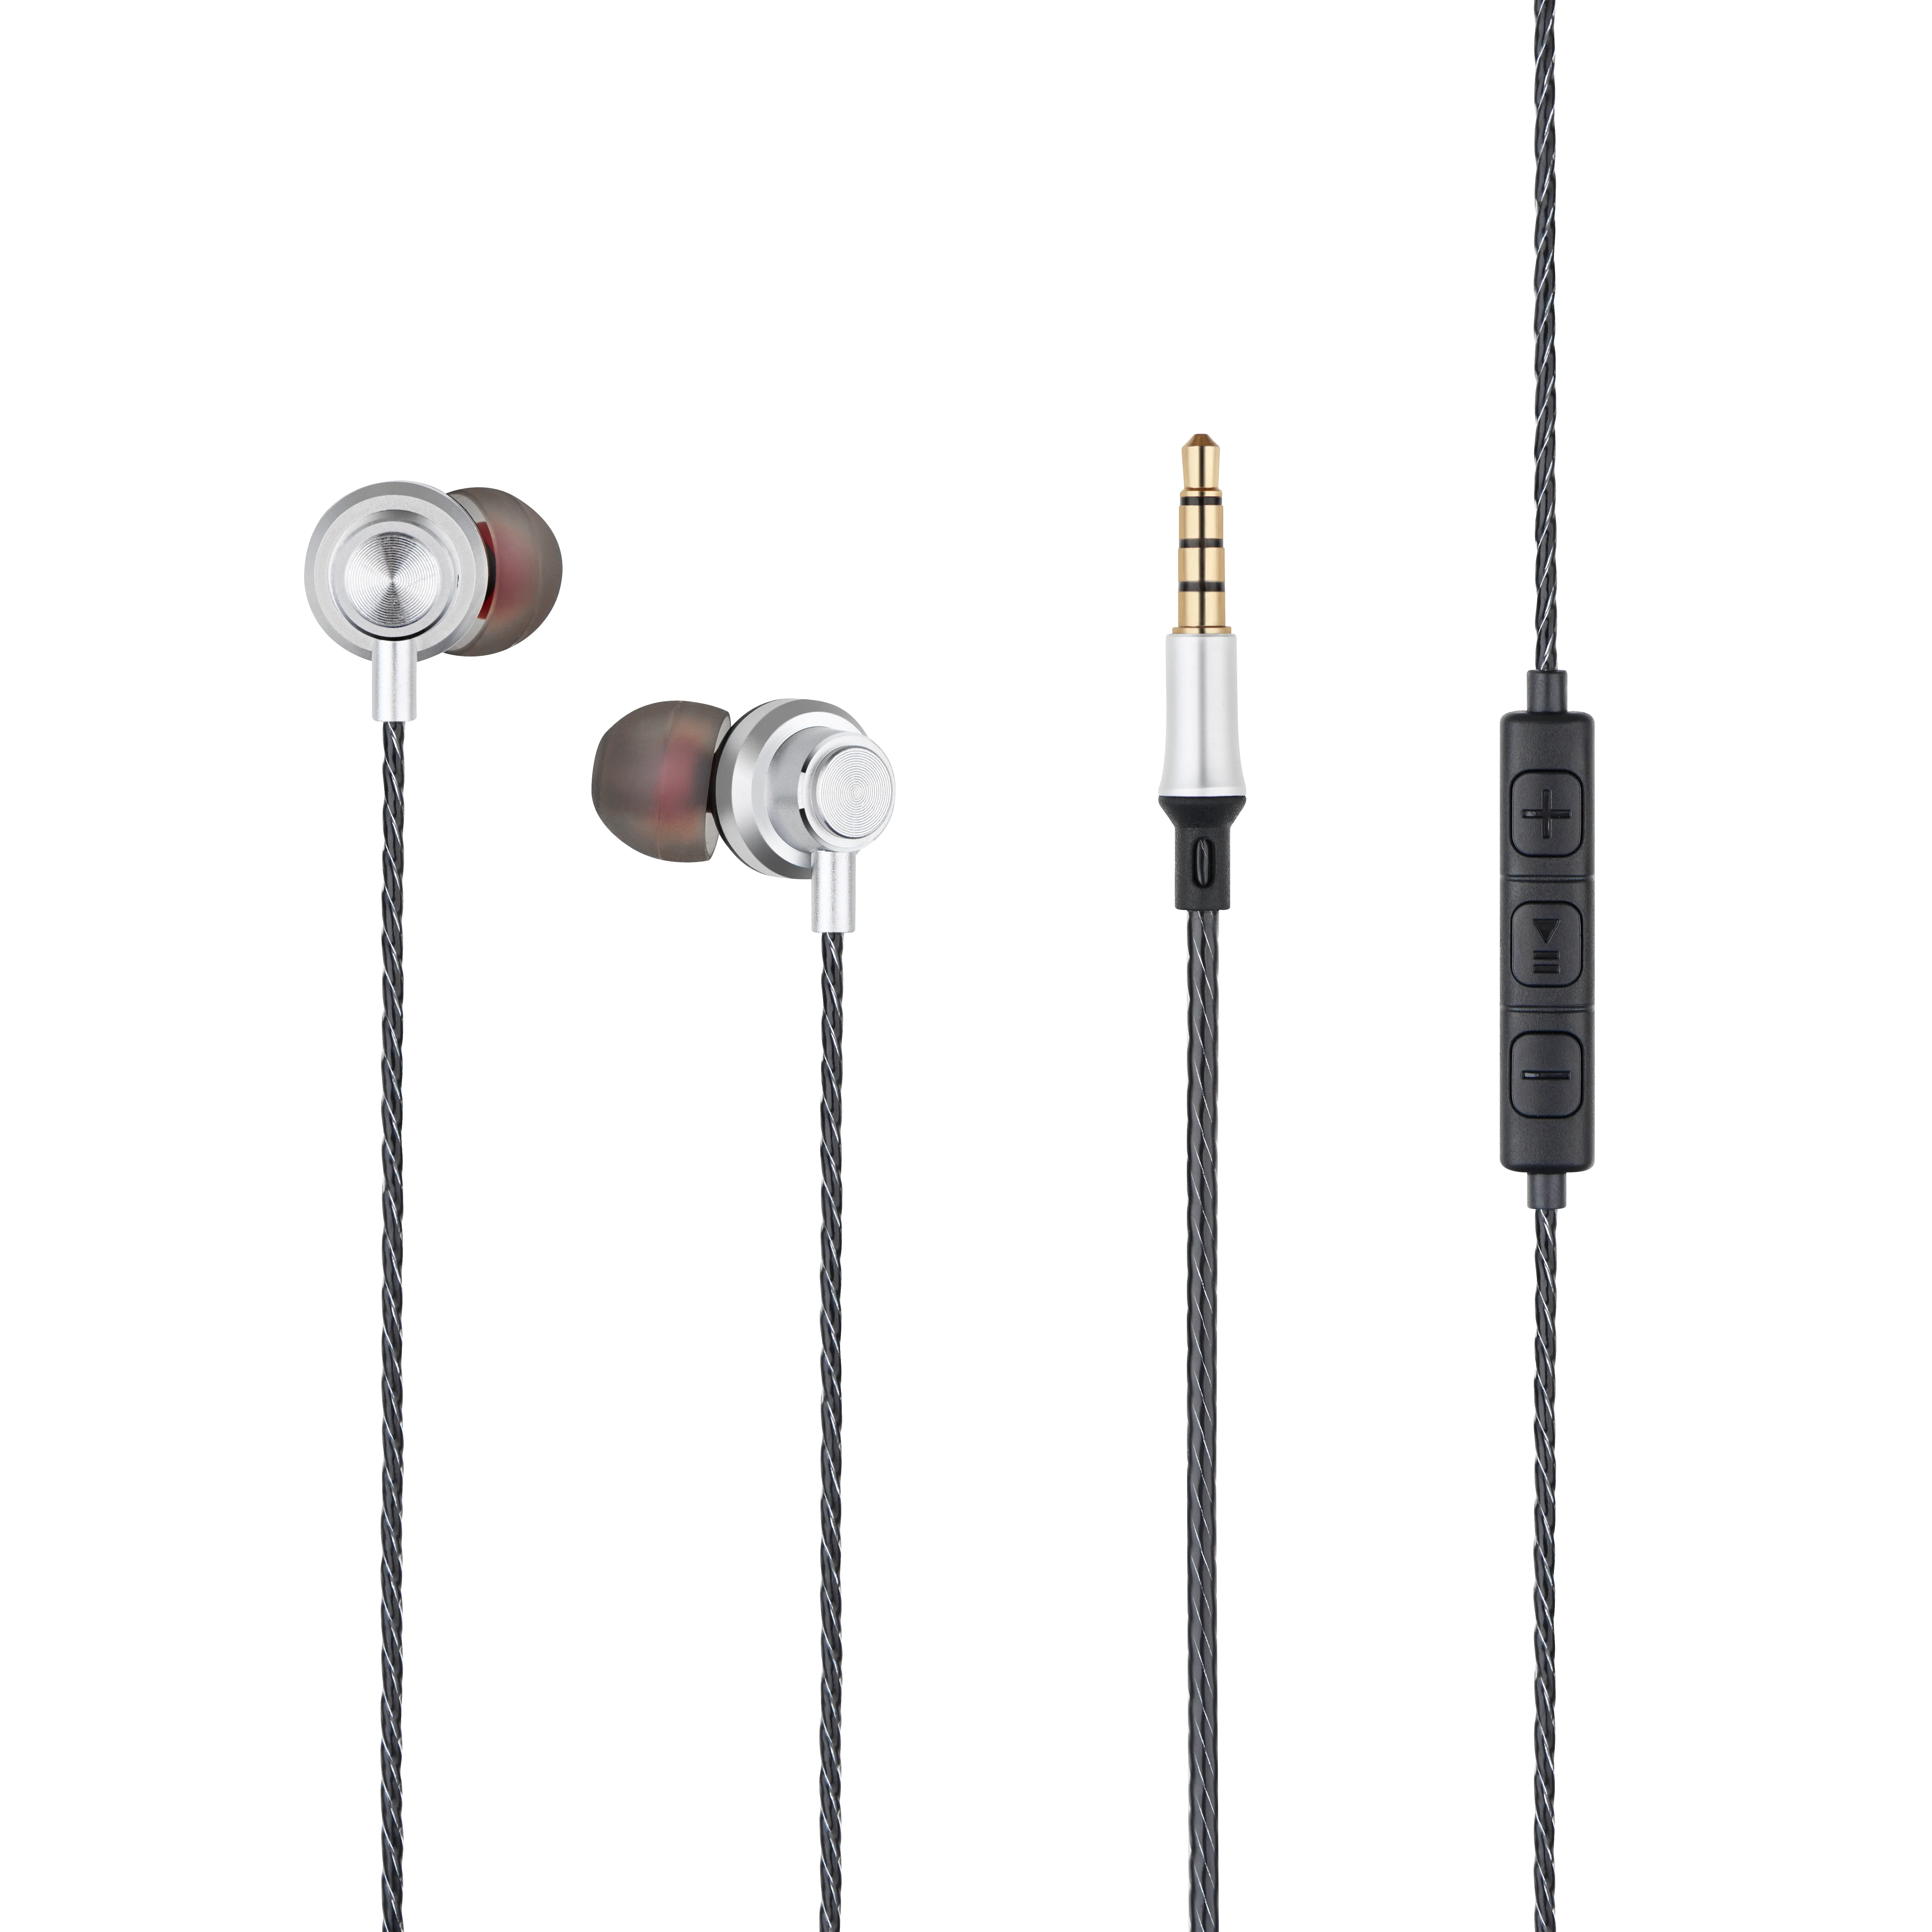 Productos calientes 2020 vuelos auriculares de Metal en-oído auriculares móvil Auriculares auriculares con micrófono con cable para ordenadores portátiles/teléfono móvil